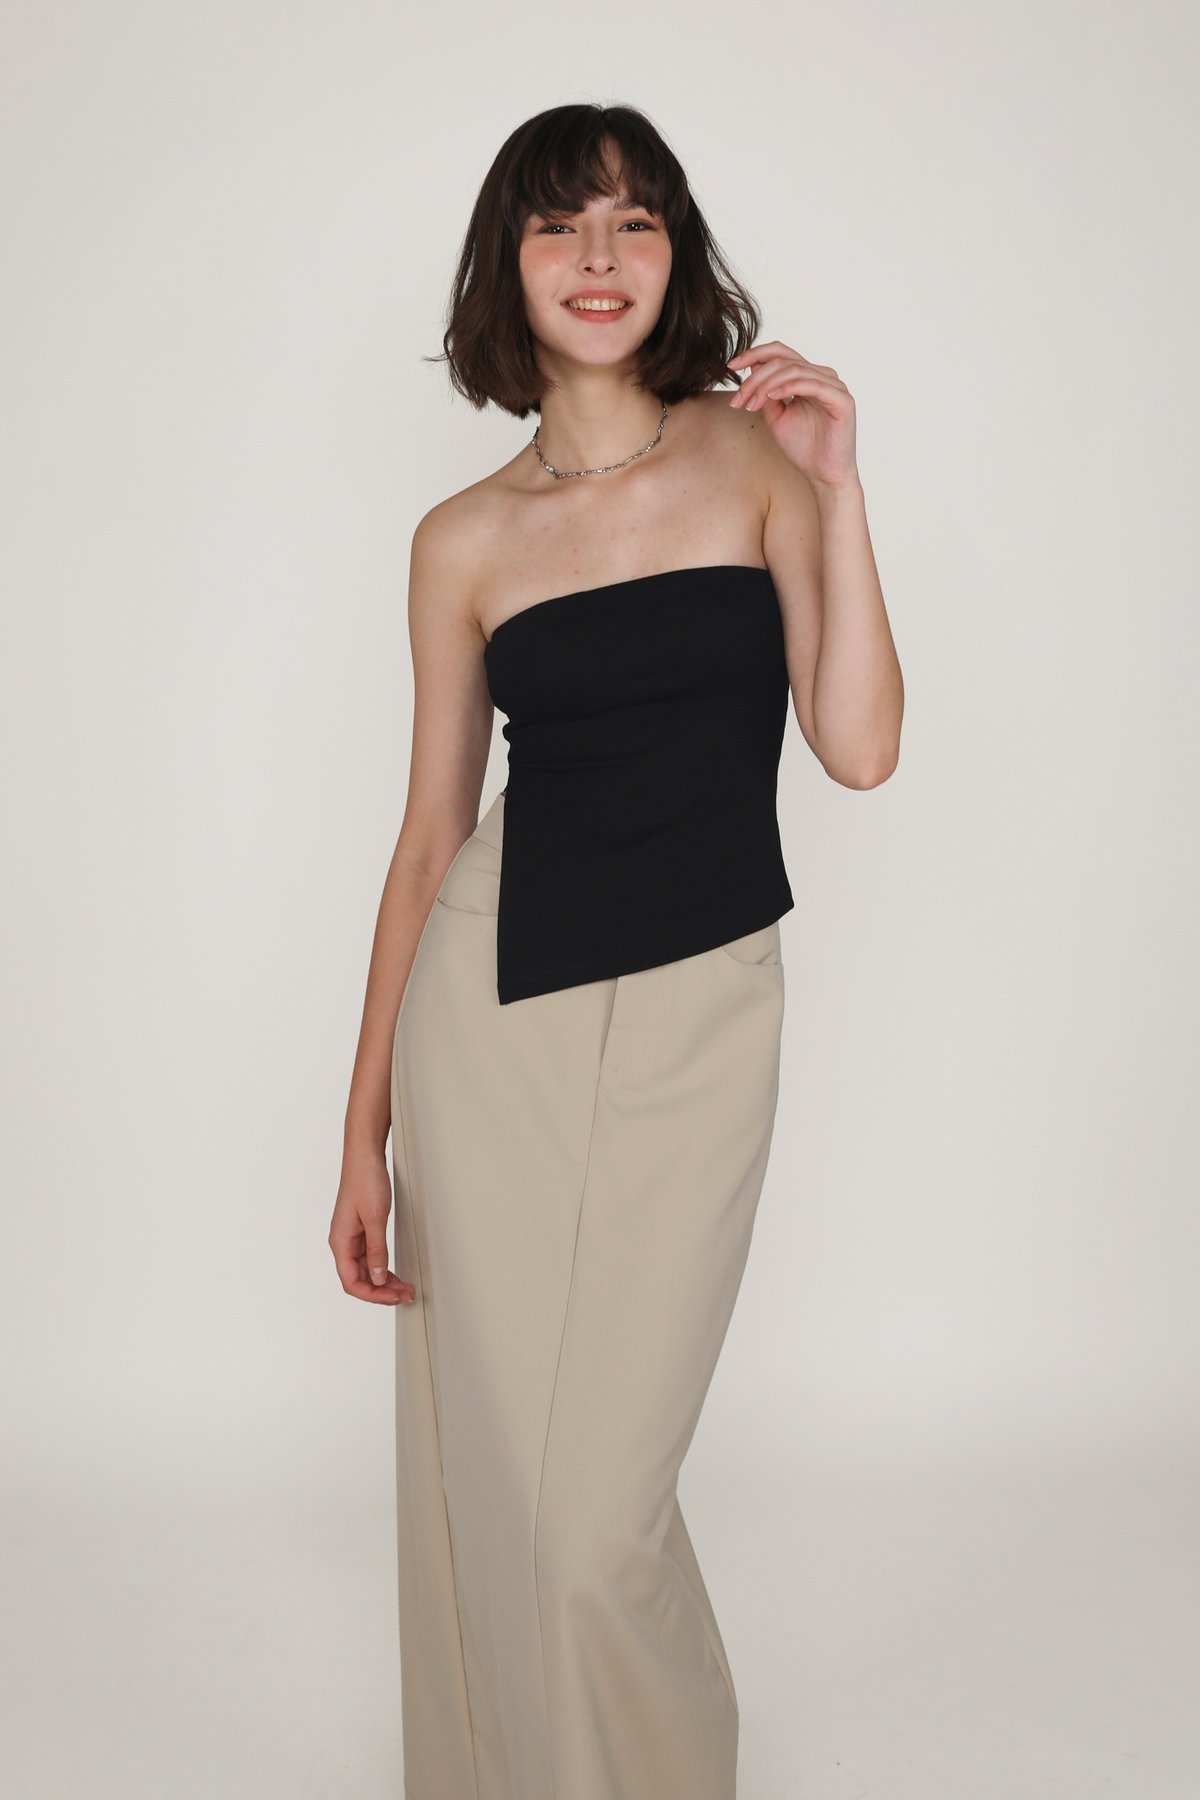 Regular Flyn Tailored Maxi Skirt (Beige Sand)